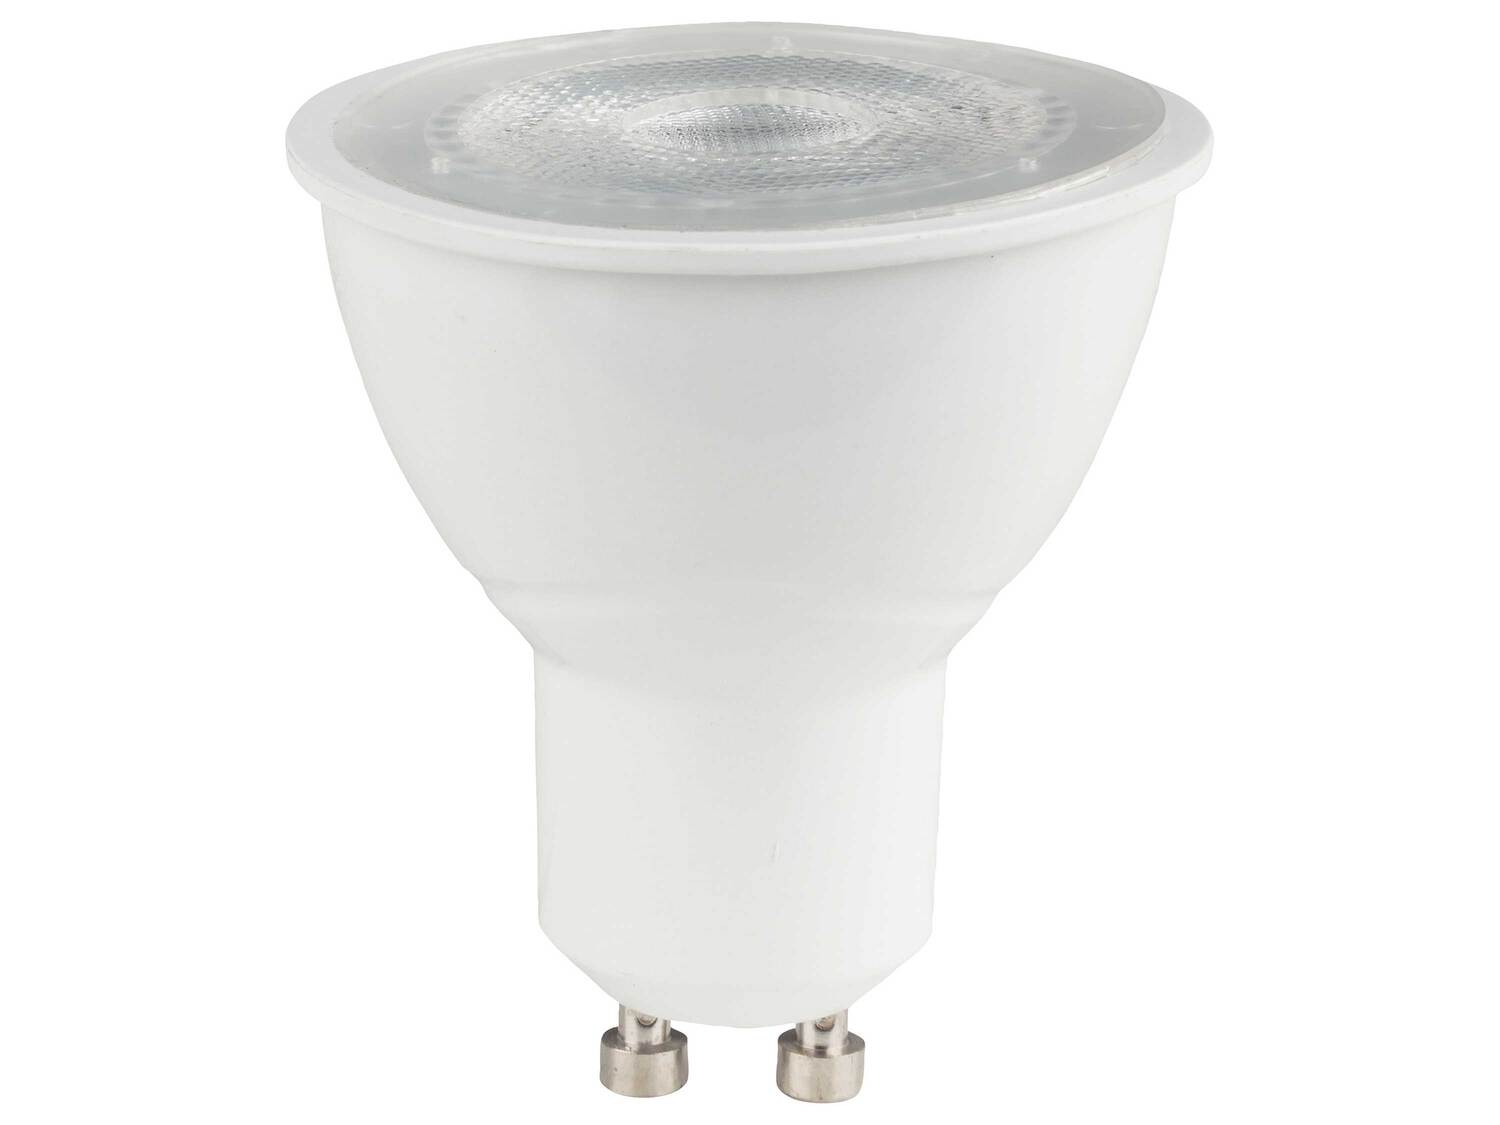 Ampoule LED connectée , le prix 7.99 € 
- E27, 9 W, 806 lm
- Commande vocale
- ...